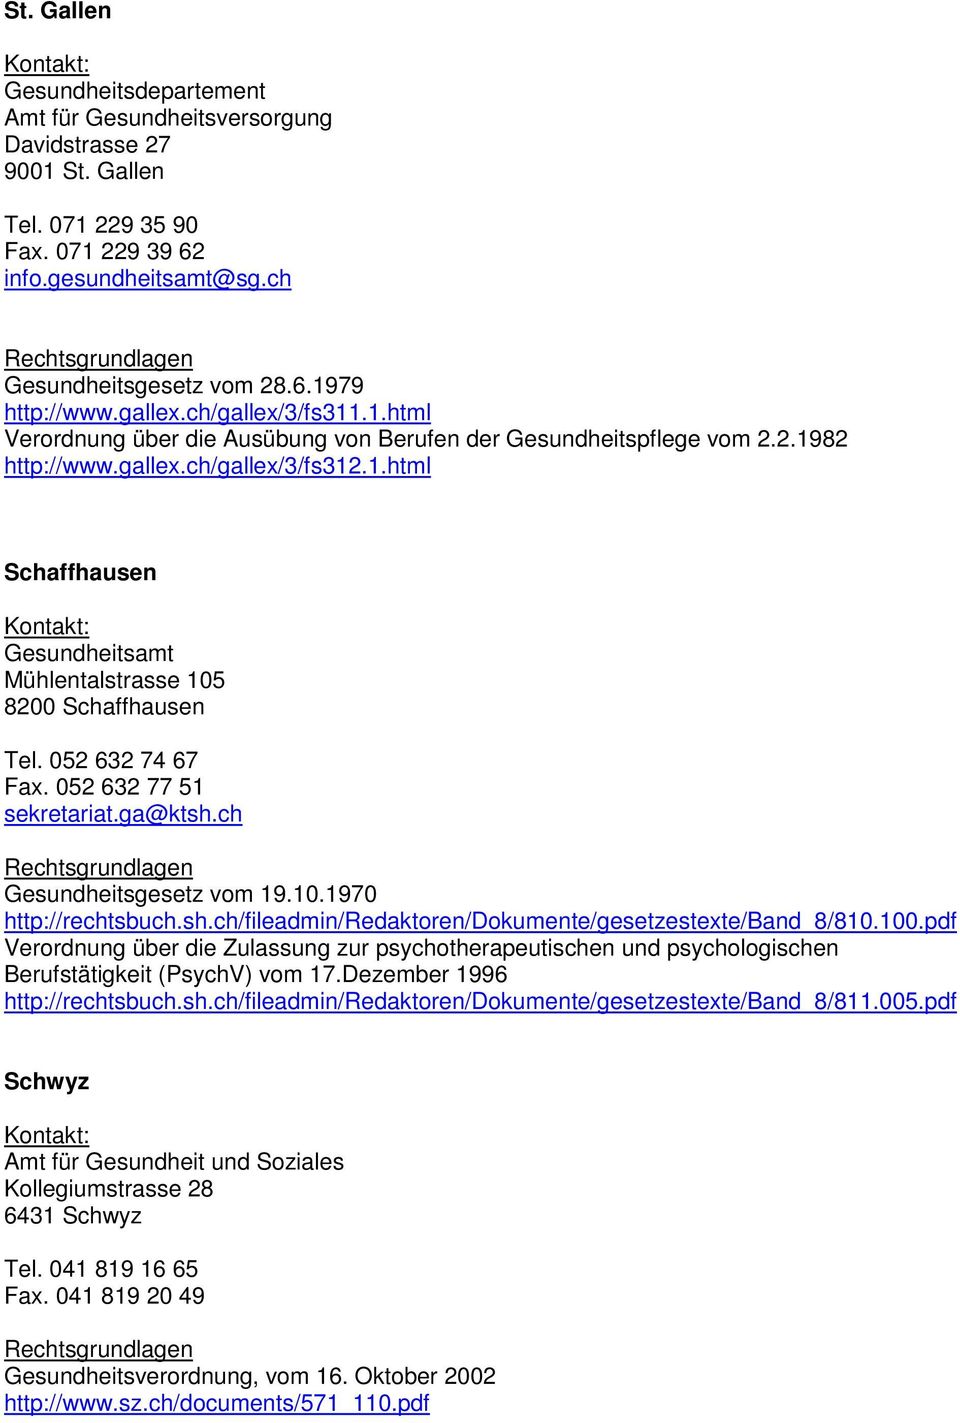 052 632 74 67 Fax. 052 632 77 51 sekretariat.ga@ktsh.ch Gesundheitsgesetz vom 19.10.1970 http://rechtsbuch.sh.ch/fileadmin/redaktoren/dokumente/gesetzestexte/band_8/810.100.